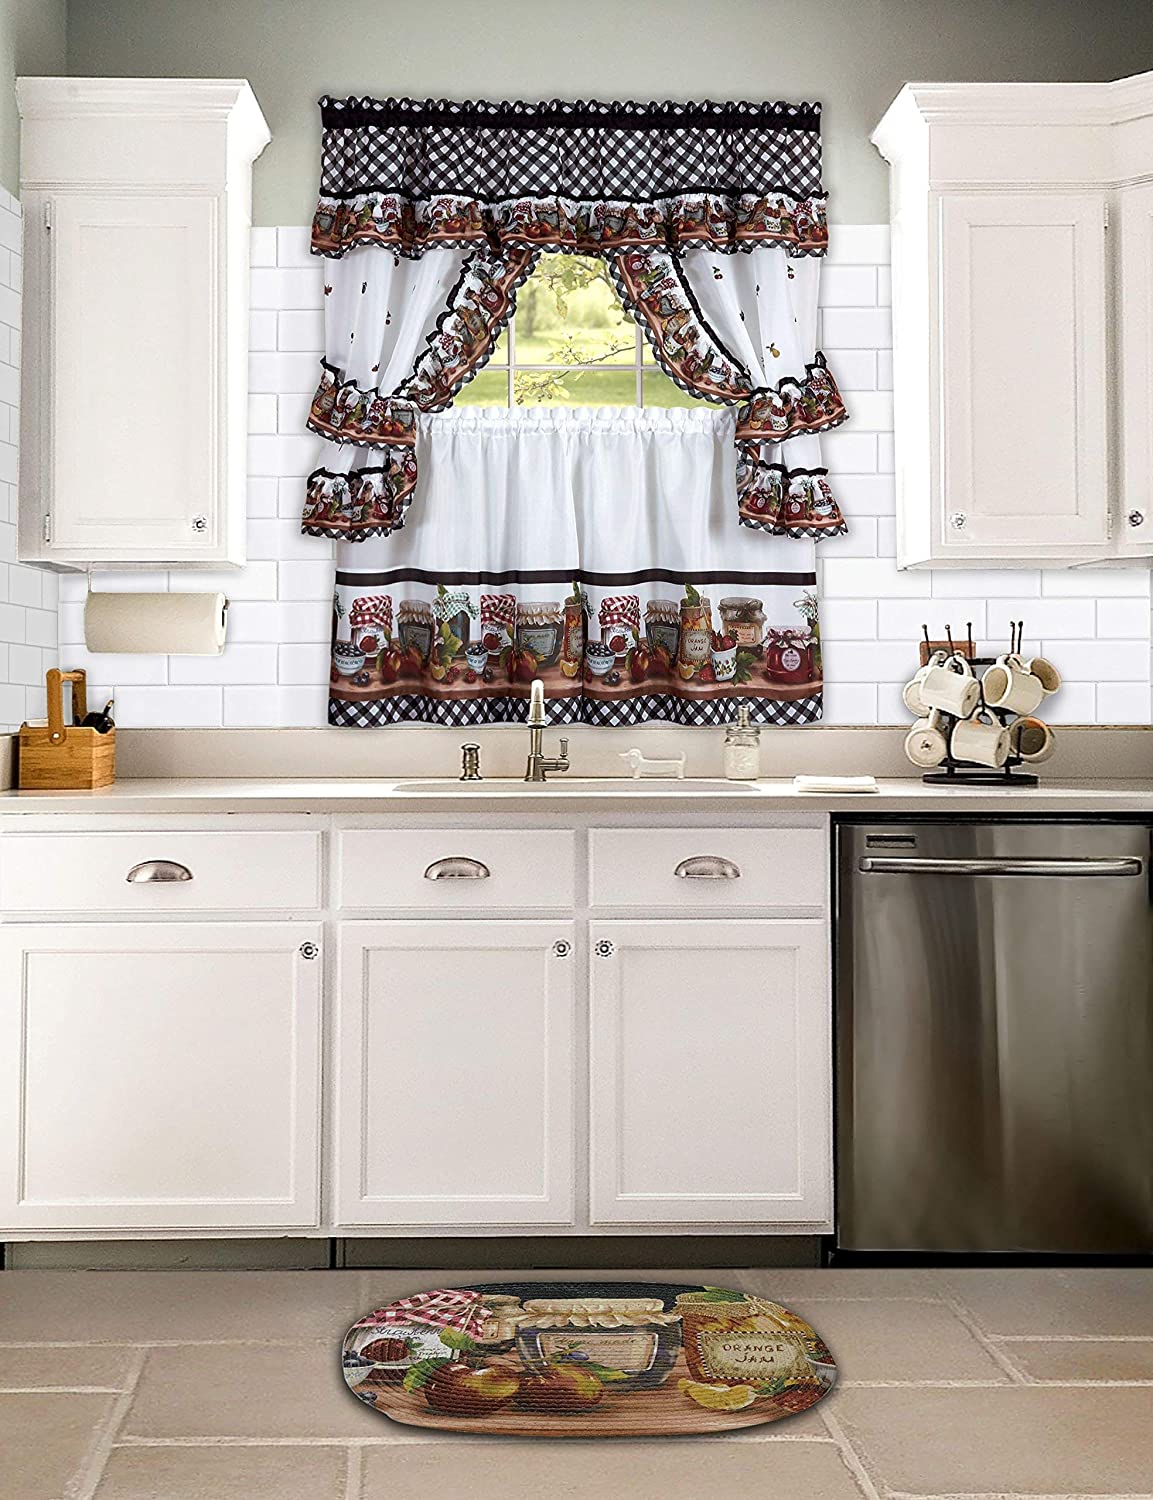 Fotos de cortinas para la cocina, Diseños y consejos - BlogHogar.com